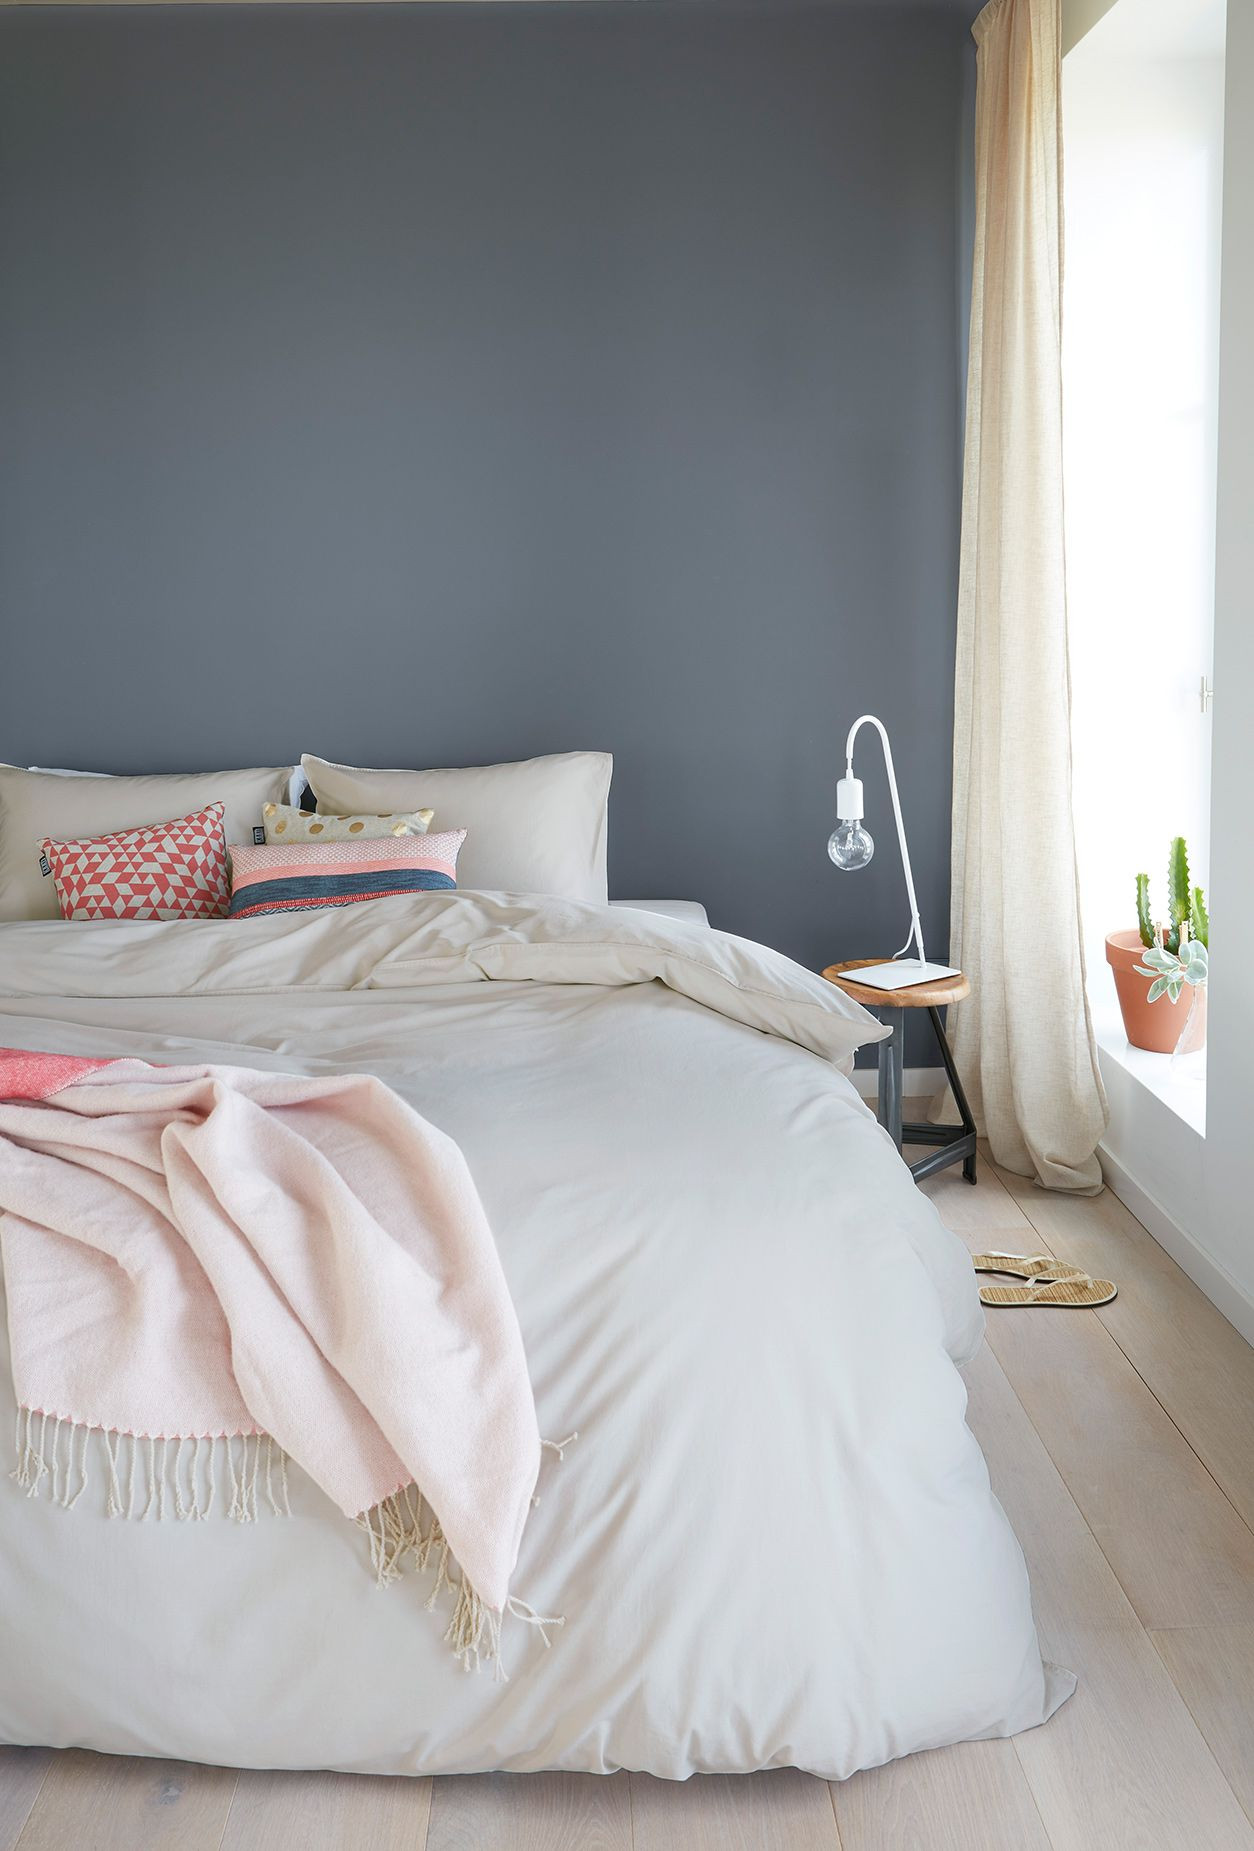 Wandfarbe Schlafzimmer
 Ein hübsches Blau Grau als Wandfarbe im Schlafzimmer